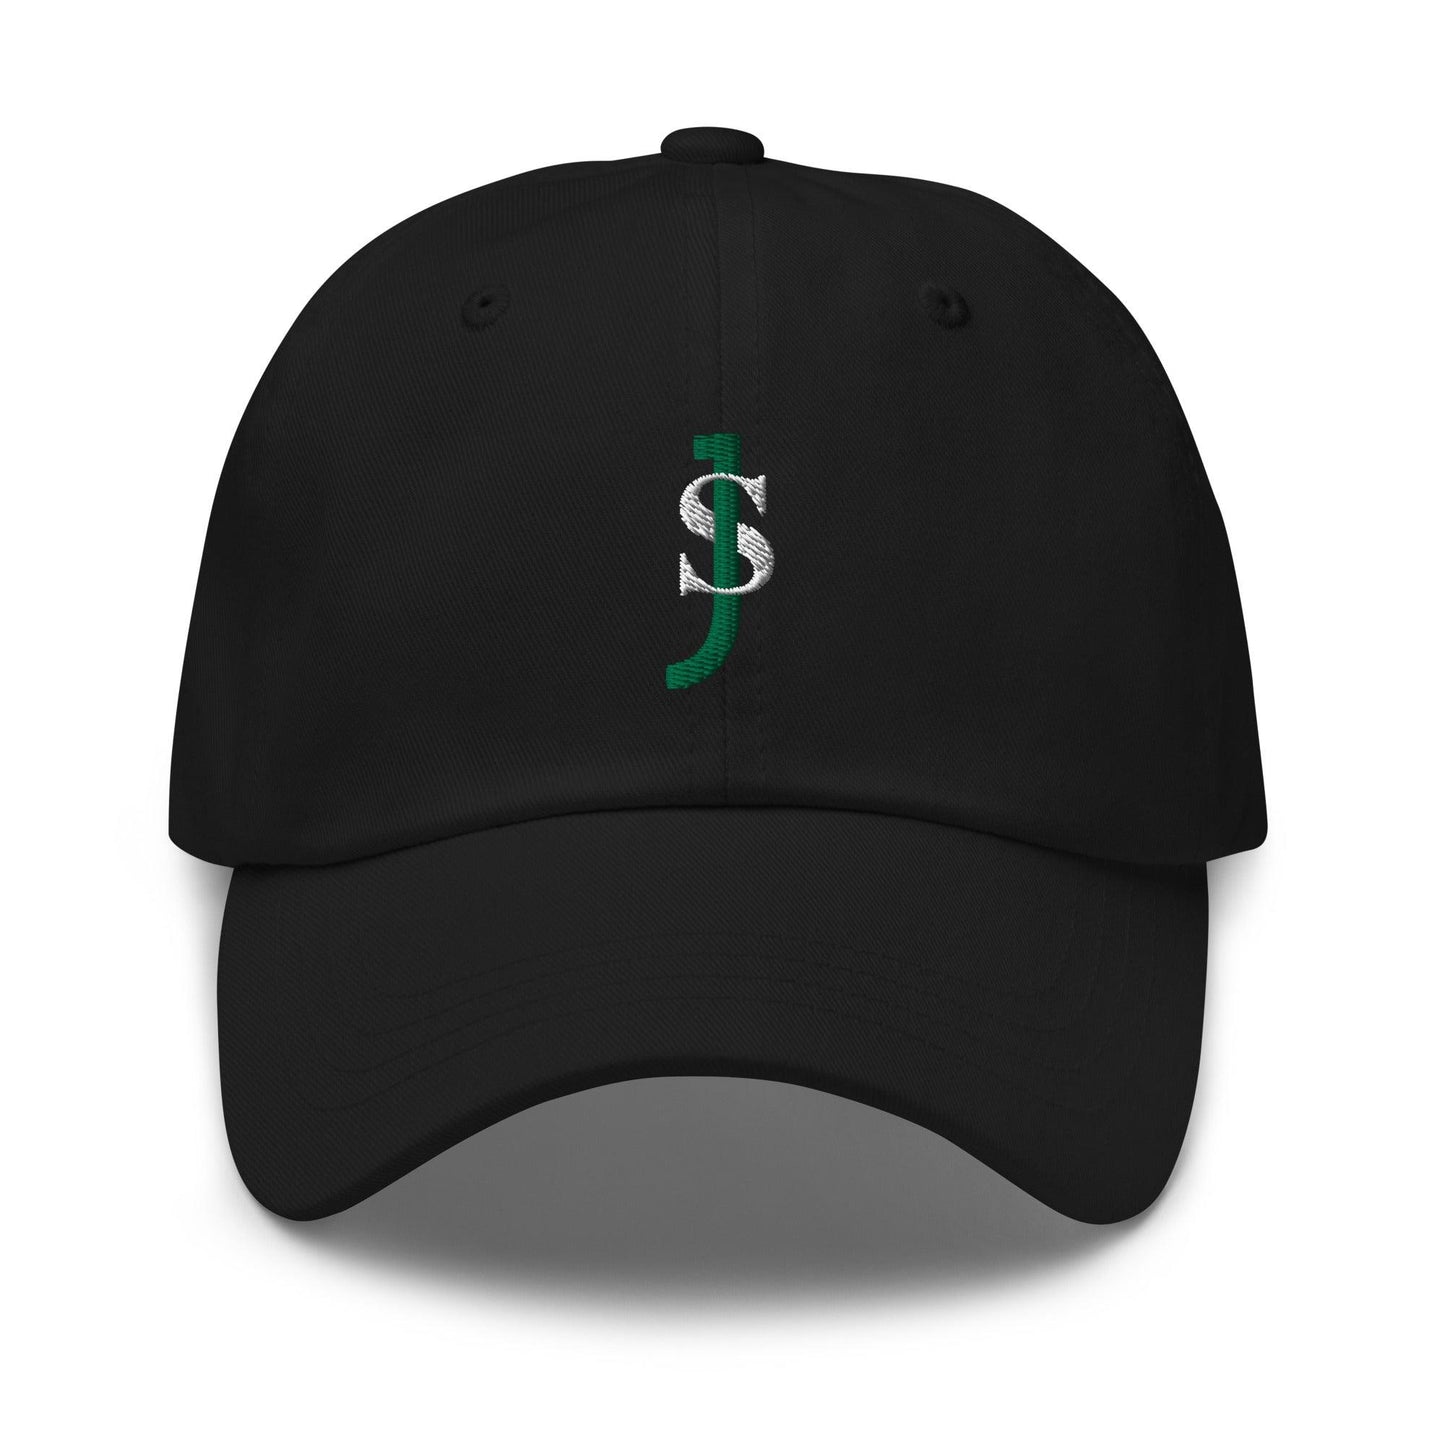 Jyaire Shorter "Signature" hat - Fan Arch